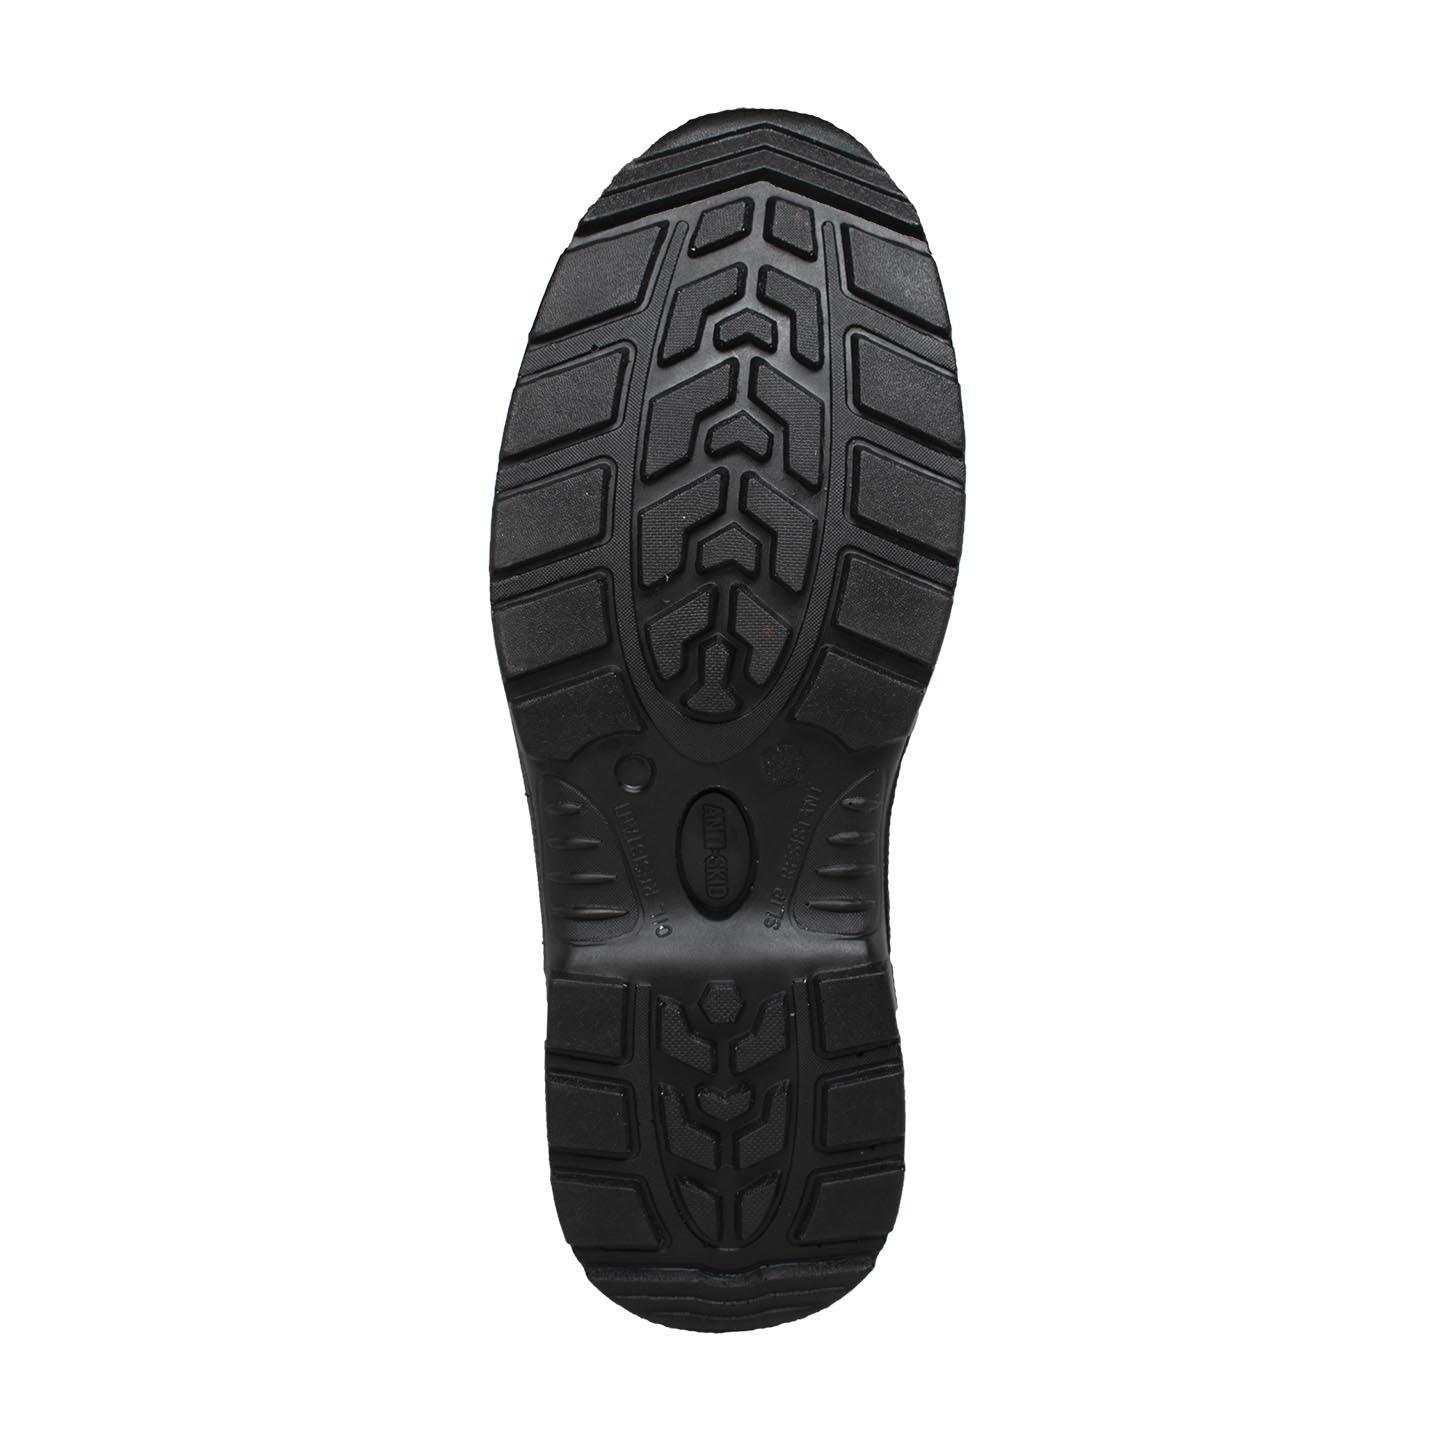 AdTec Mens 6" Steel Toe Work Boot Black - Flyclothing LLC